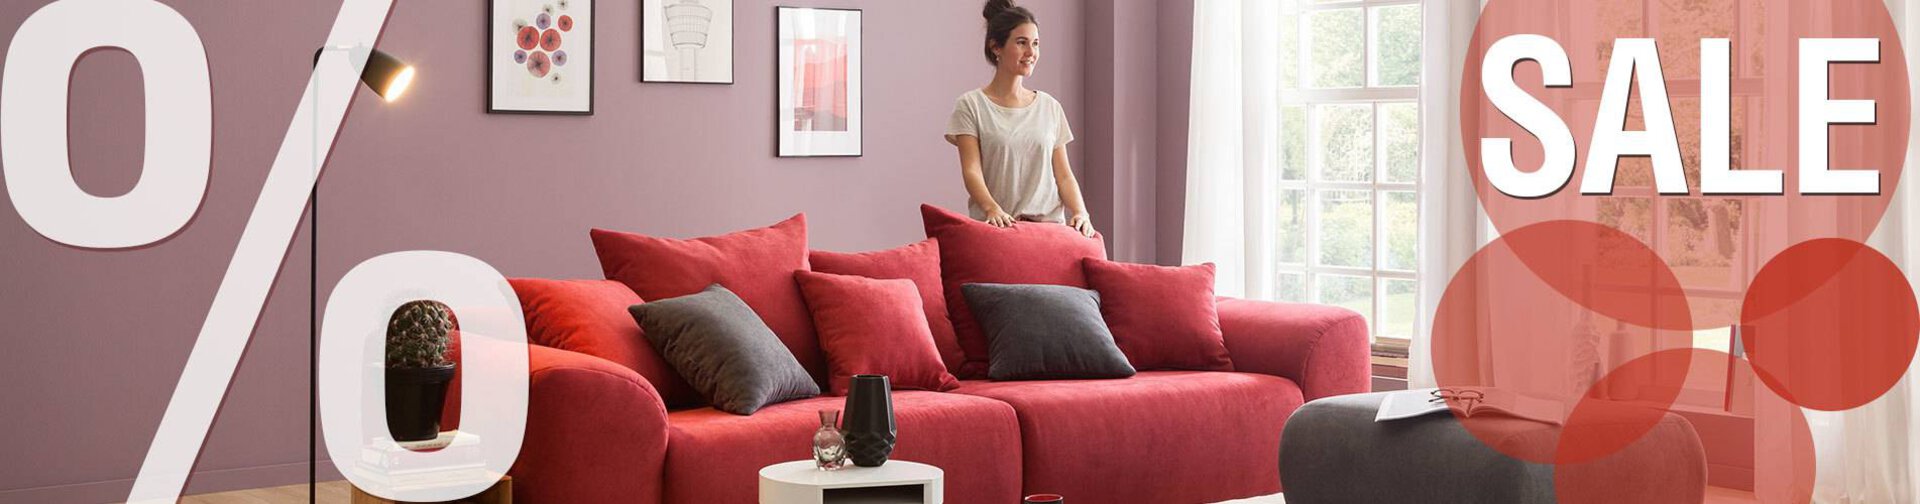 möbel sofa bett schlafen wohnen inhofer sale abverkauf